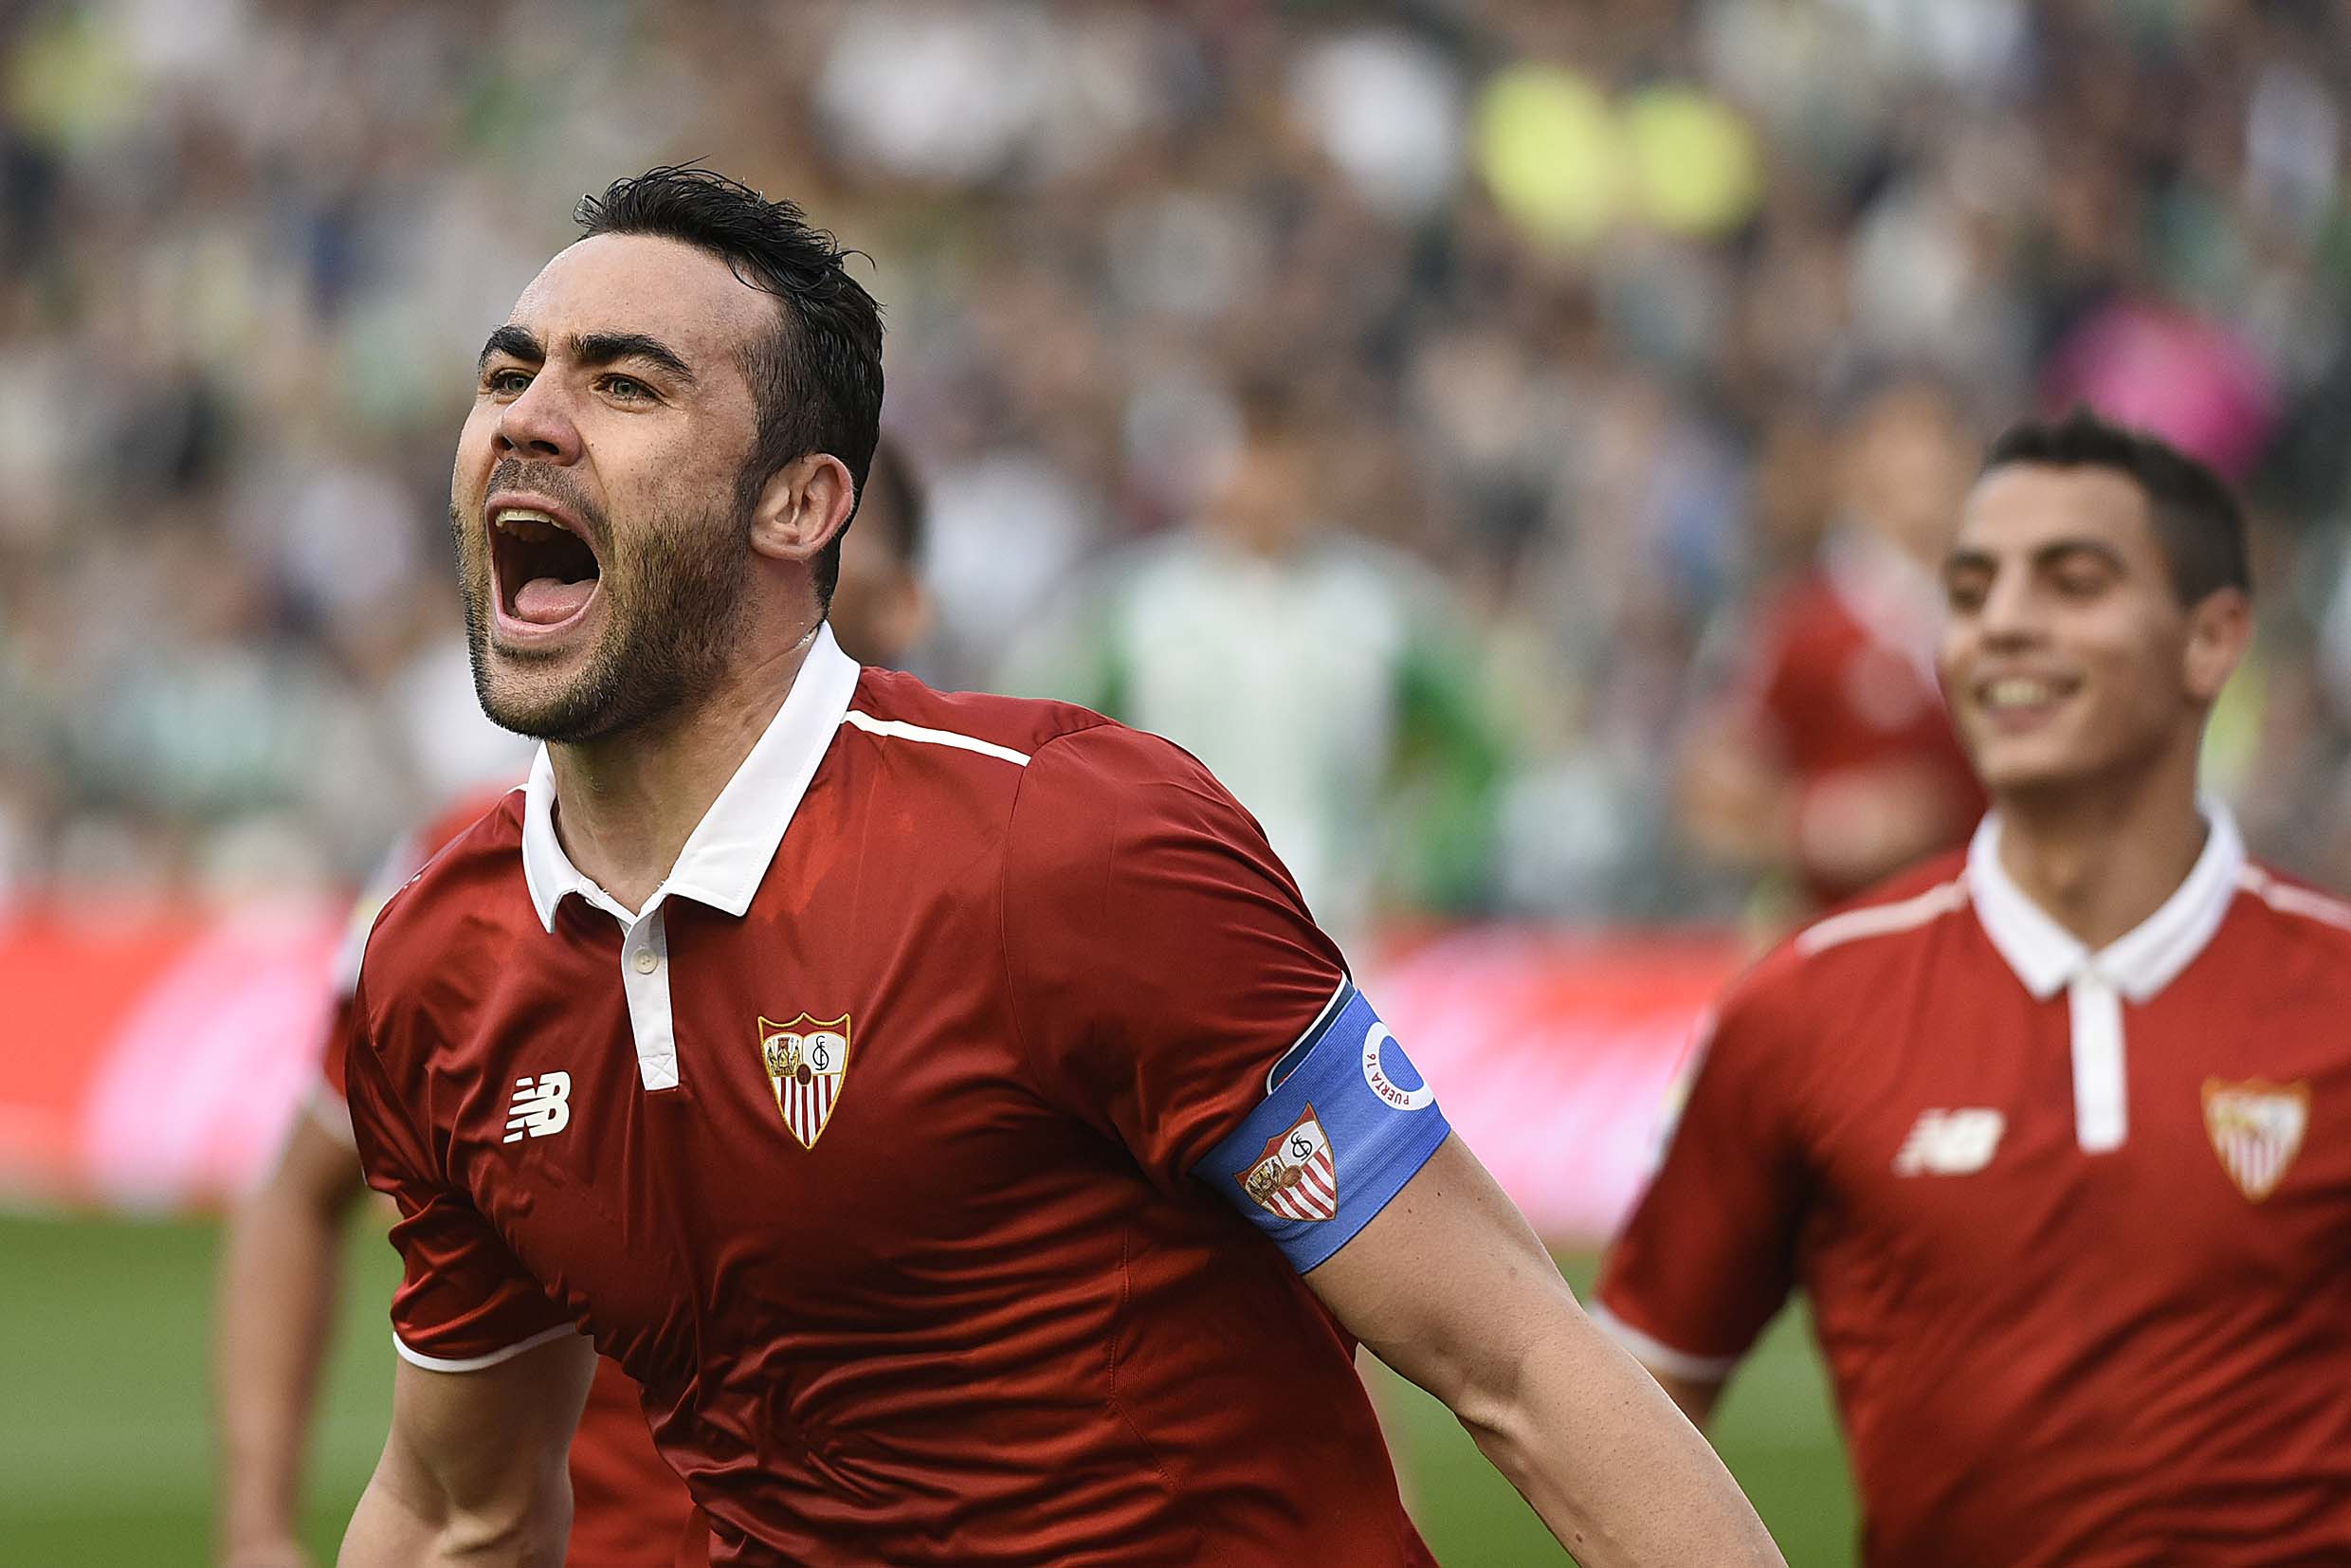 Vicente Iborra celebrates a goal for Sevilla FC